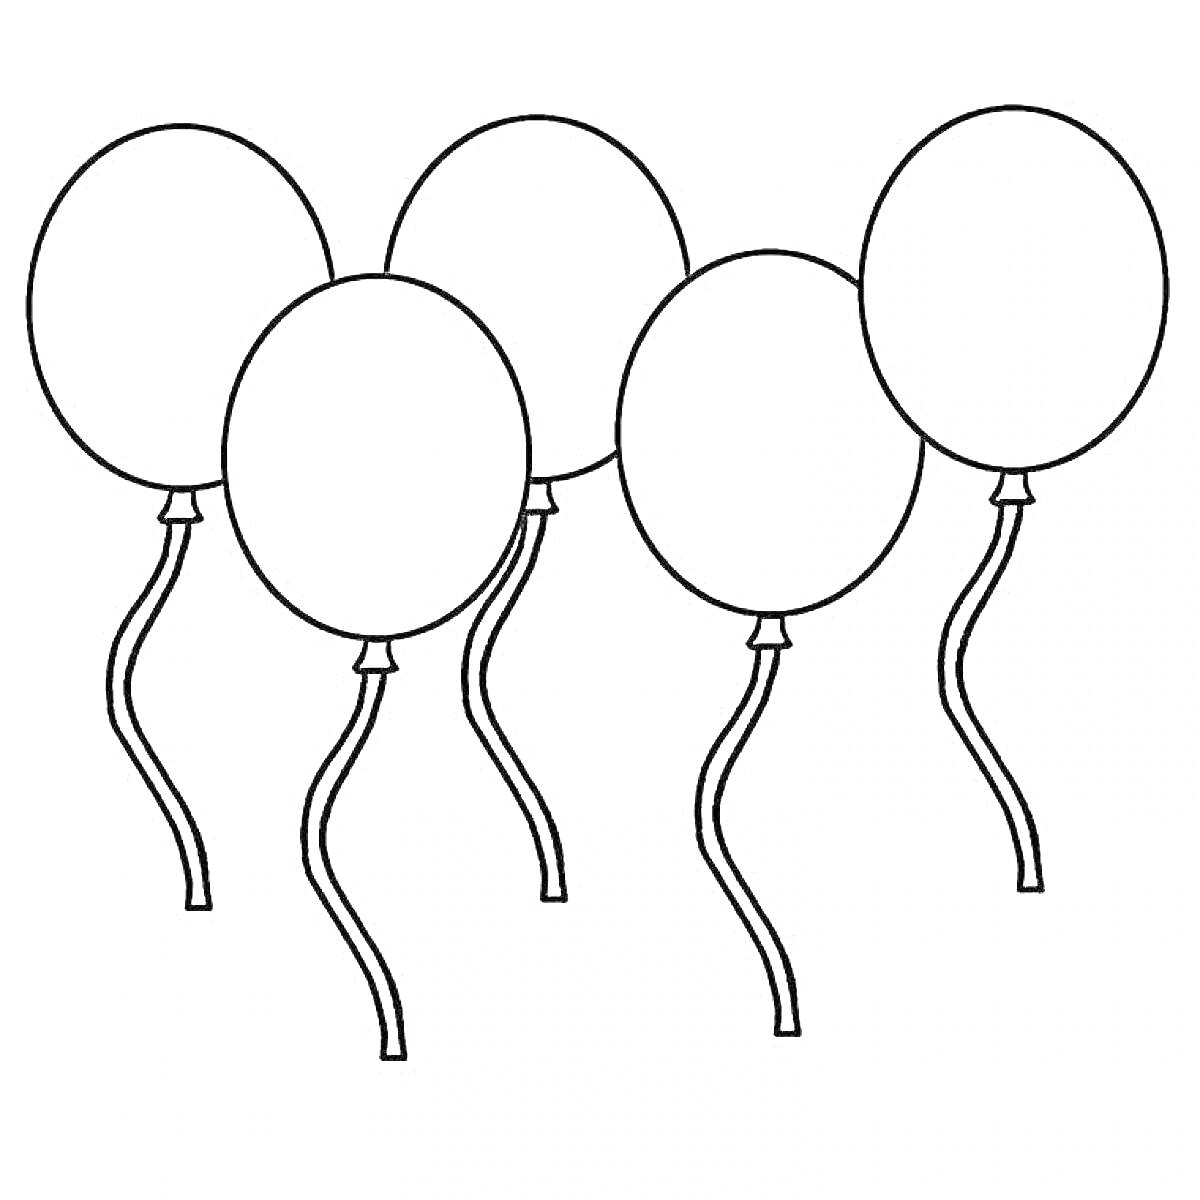 Раскраска пять воздушных шариков с нитками